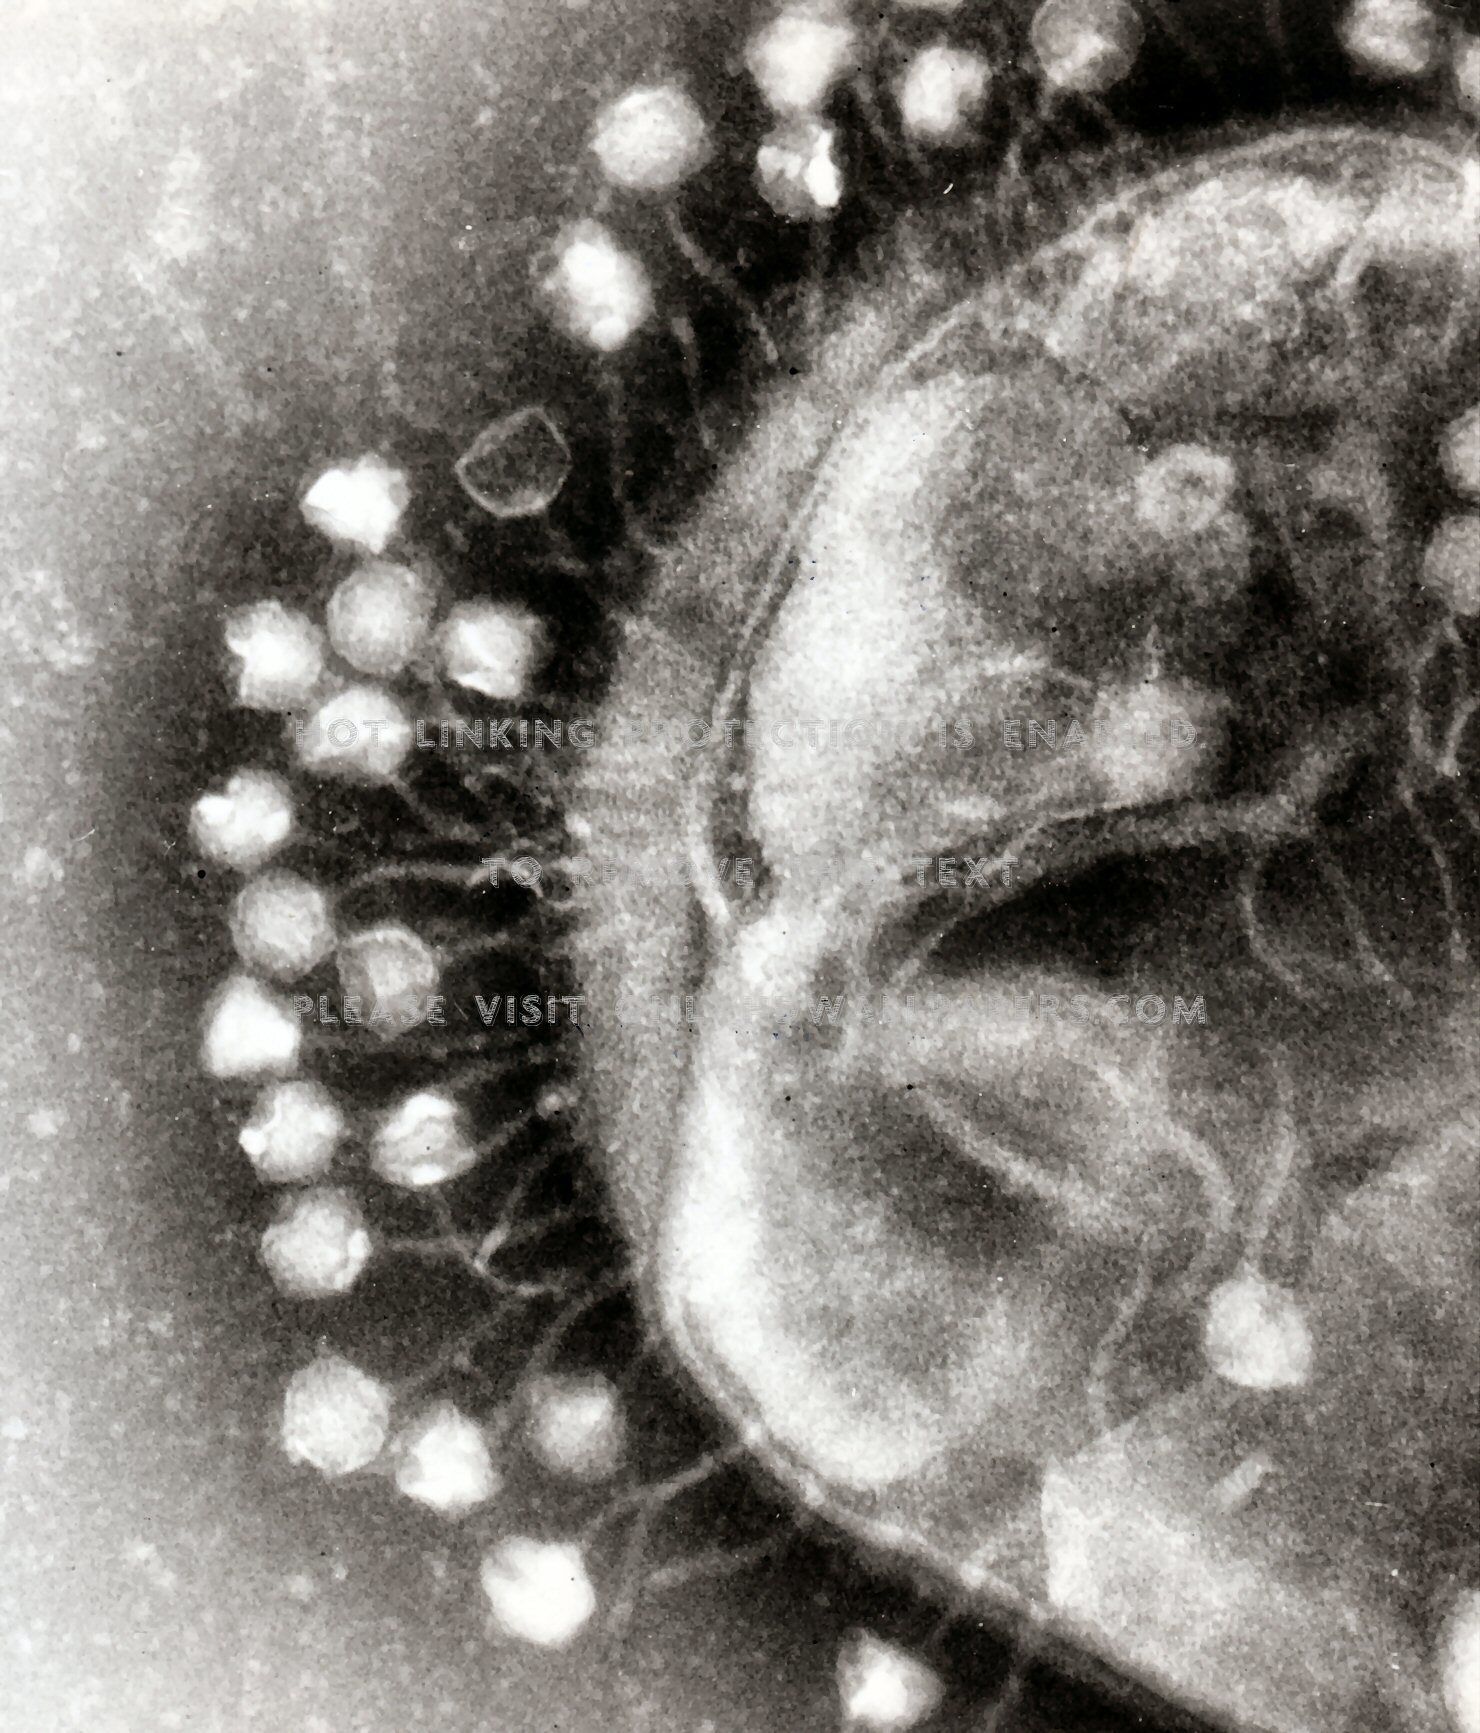 phage Viral bukake on